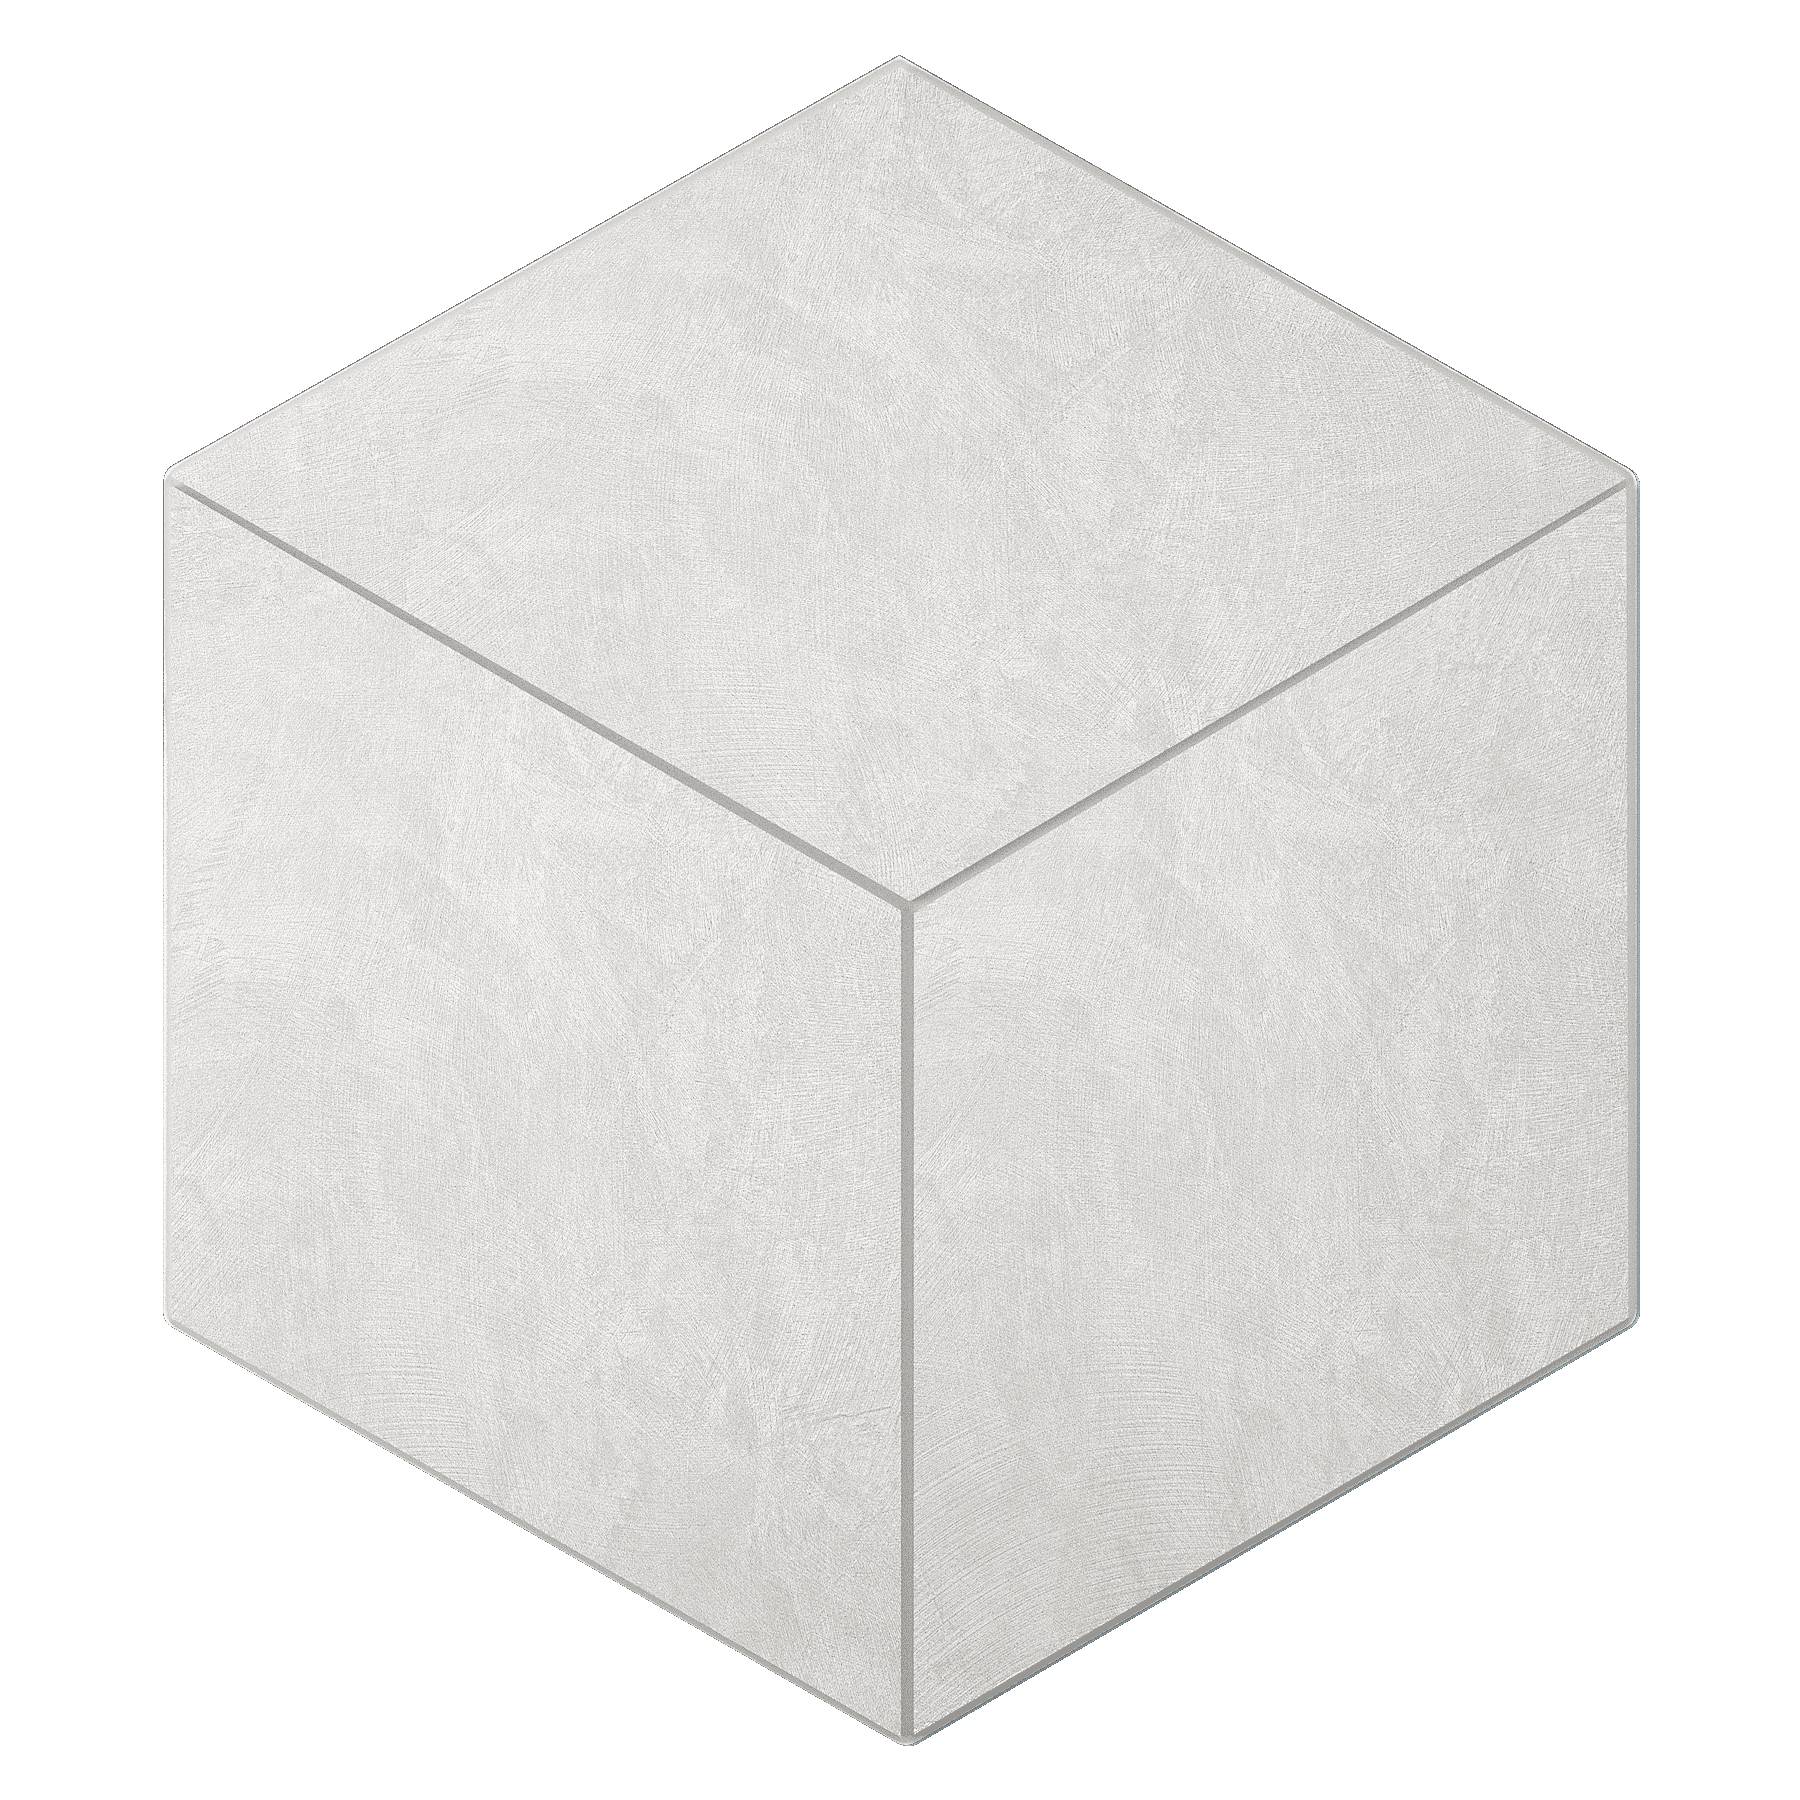 Мозаика Ametis Spectrum Milky White SR00 Cube Непол. 29x25 мозаика ametis spectrum yellow sr04 cube непол 29x25